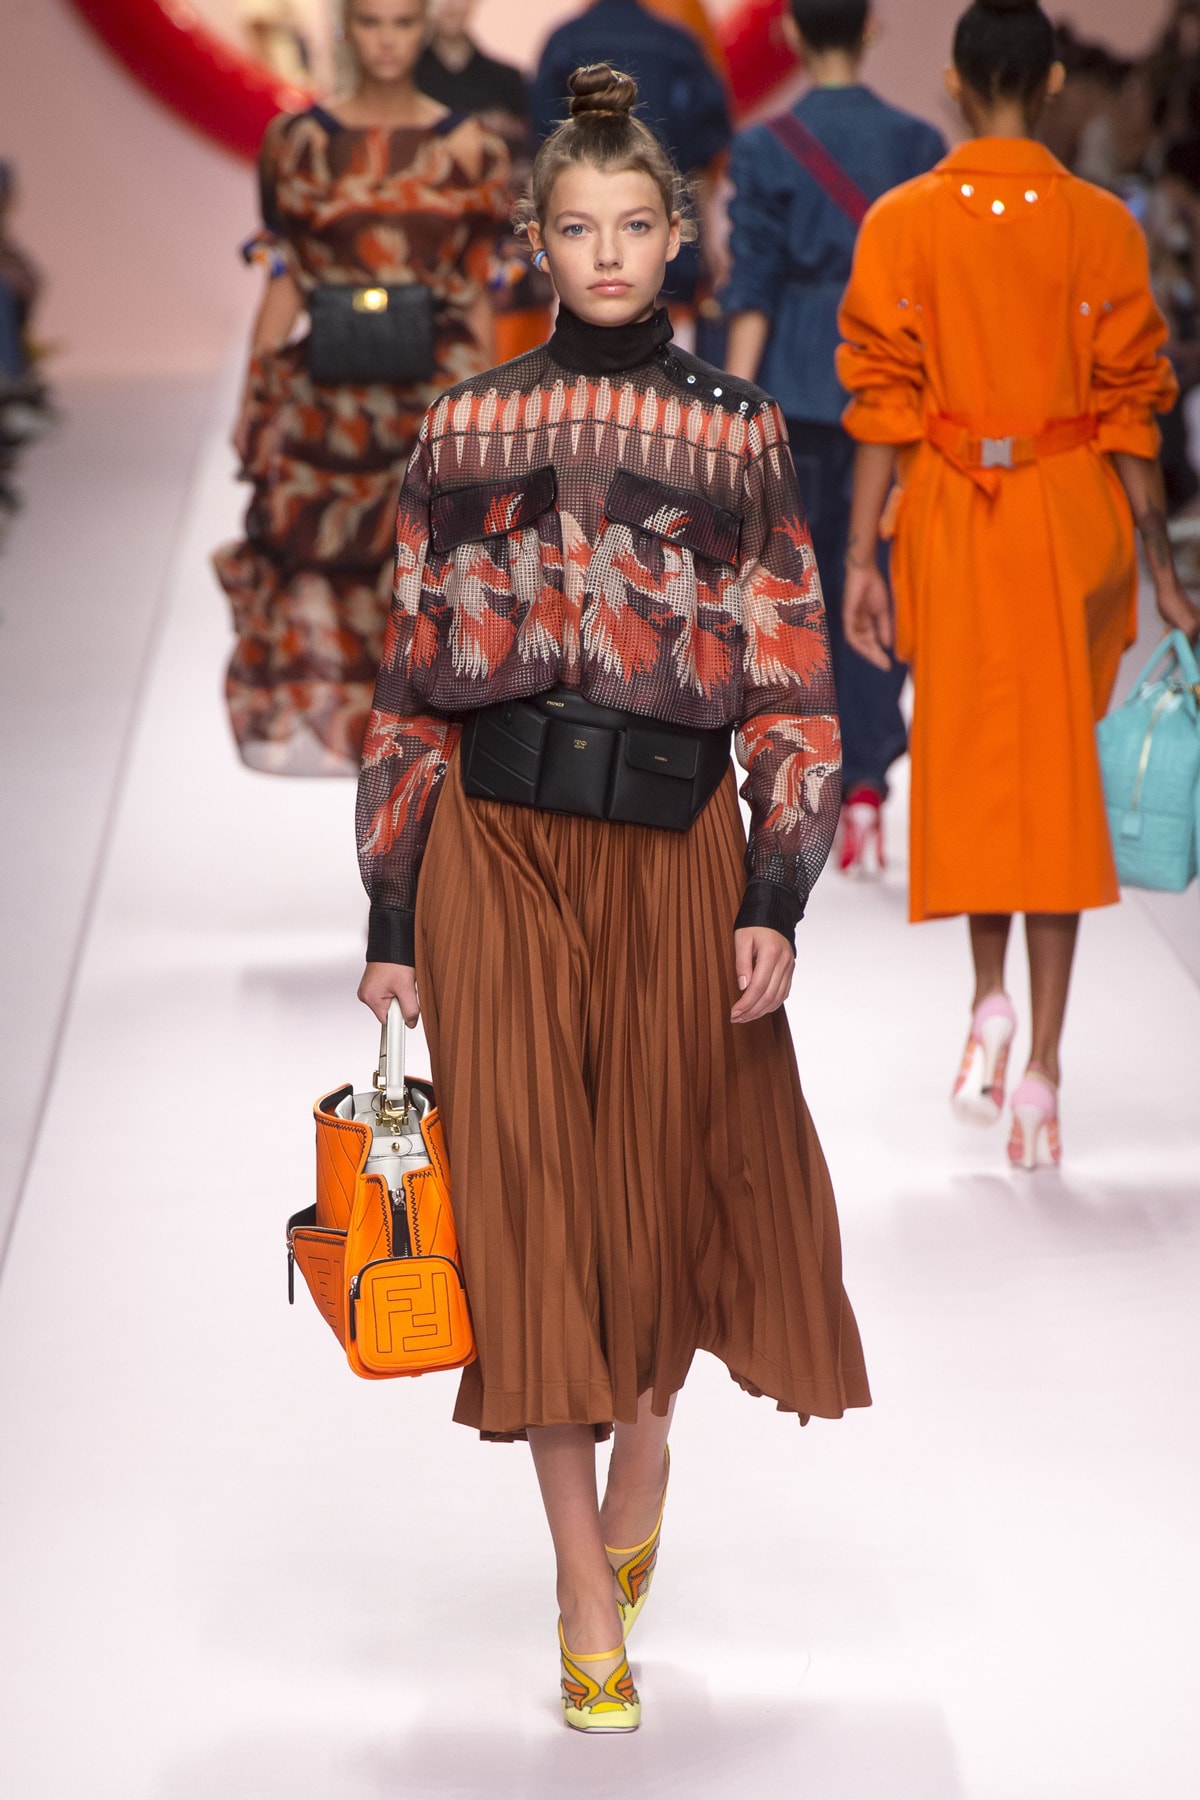 Fendi Karl Lagerfeld Spring Summer 2019 Milan Fashion Week Show Collection top Black Orange Skirt Brown